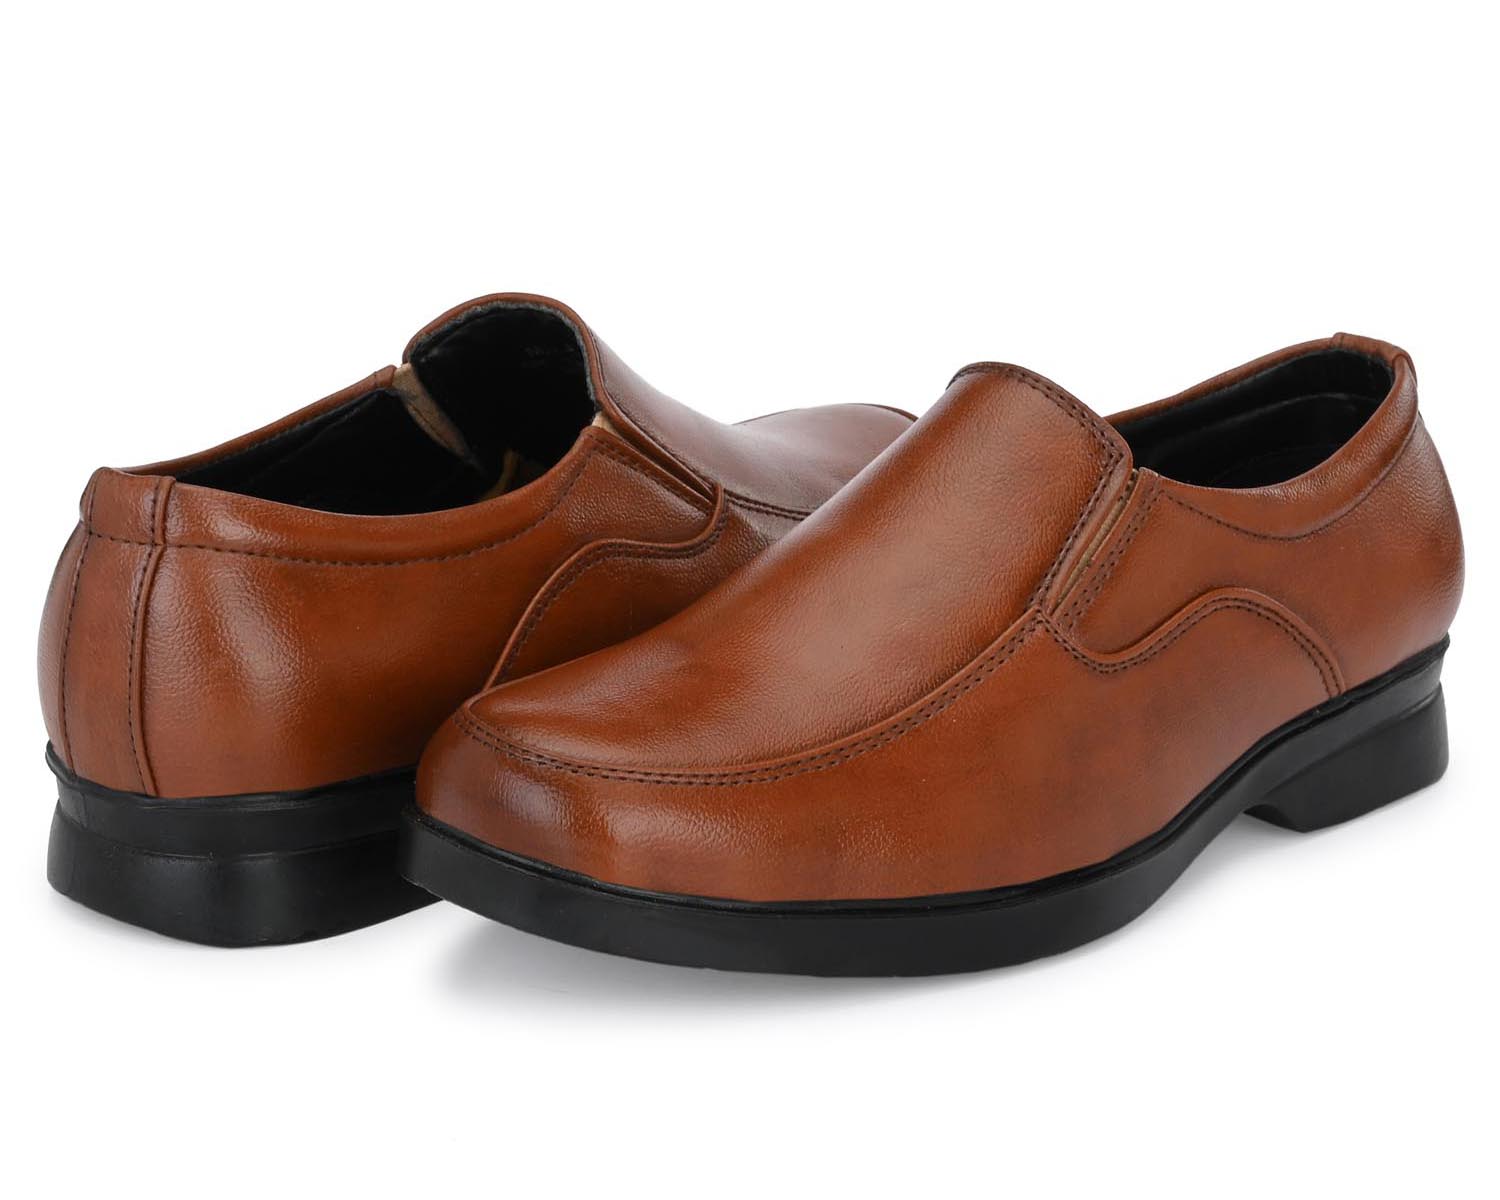 Pair-it Men moccasin Formal Shoes - MN-RYDER214 - Tan